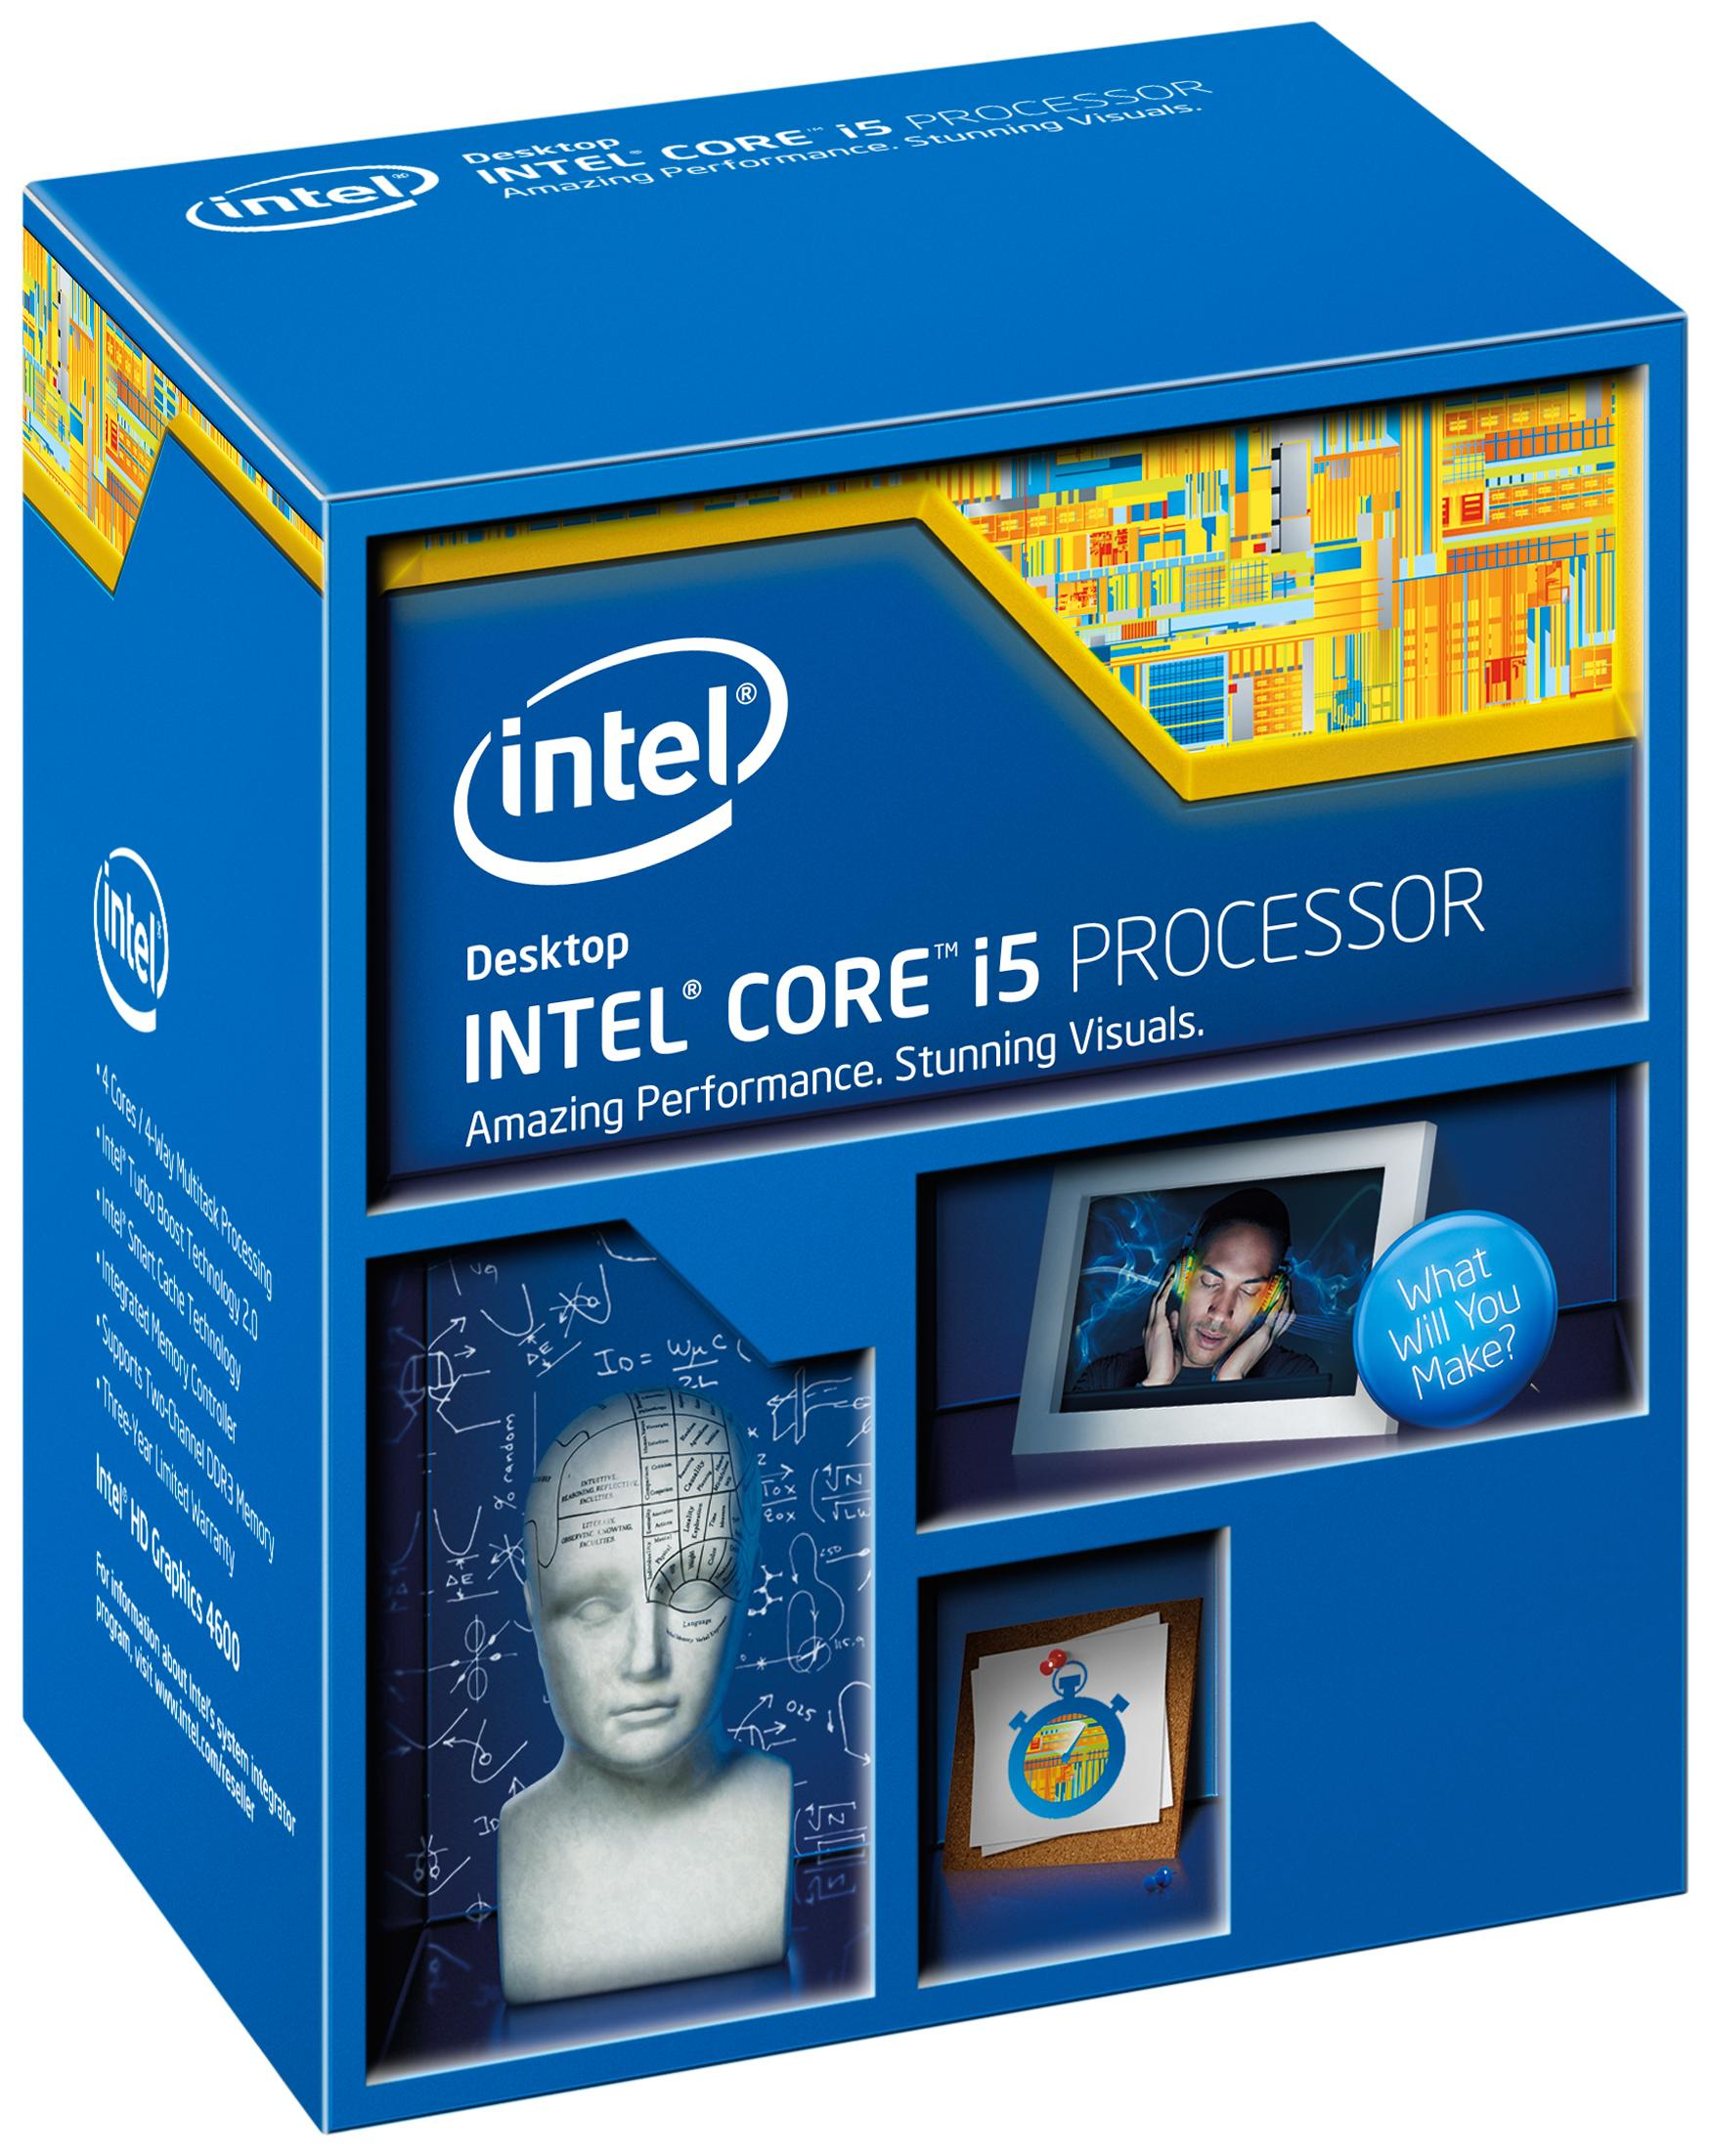 MegaMobile.be: Intel CPU/CORE I5-4570 3.20GHZ 6M LGA1150 BOX